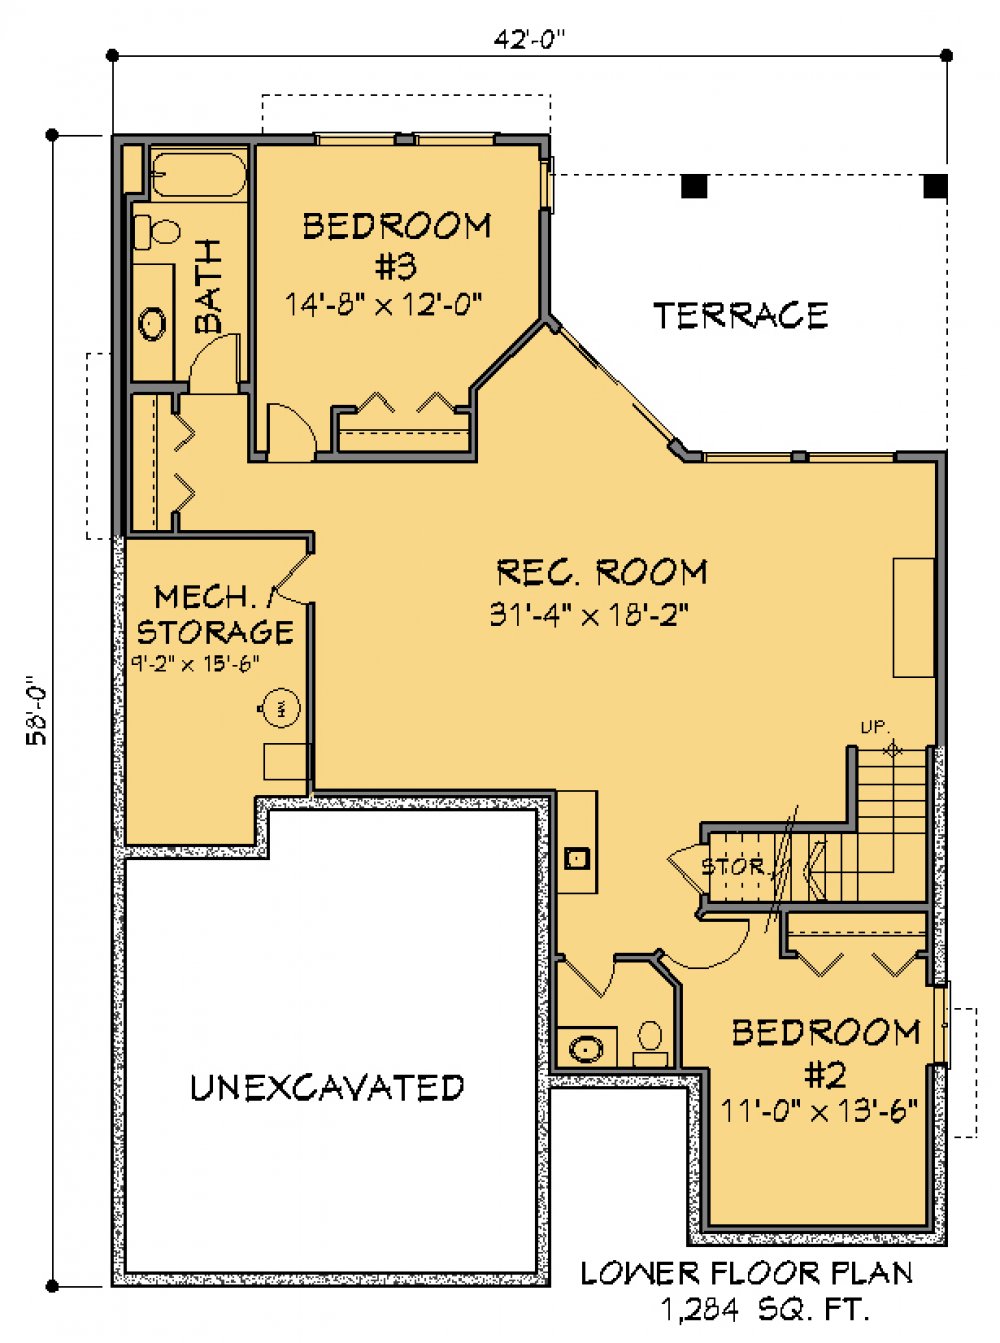 House Plan E1340-10 Lower Floor Plan